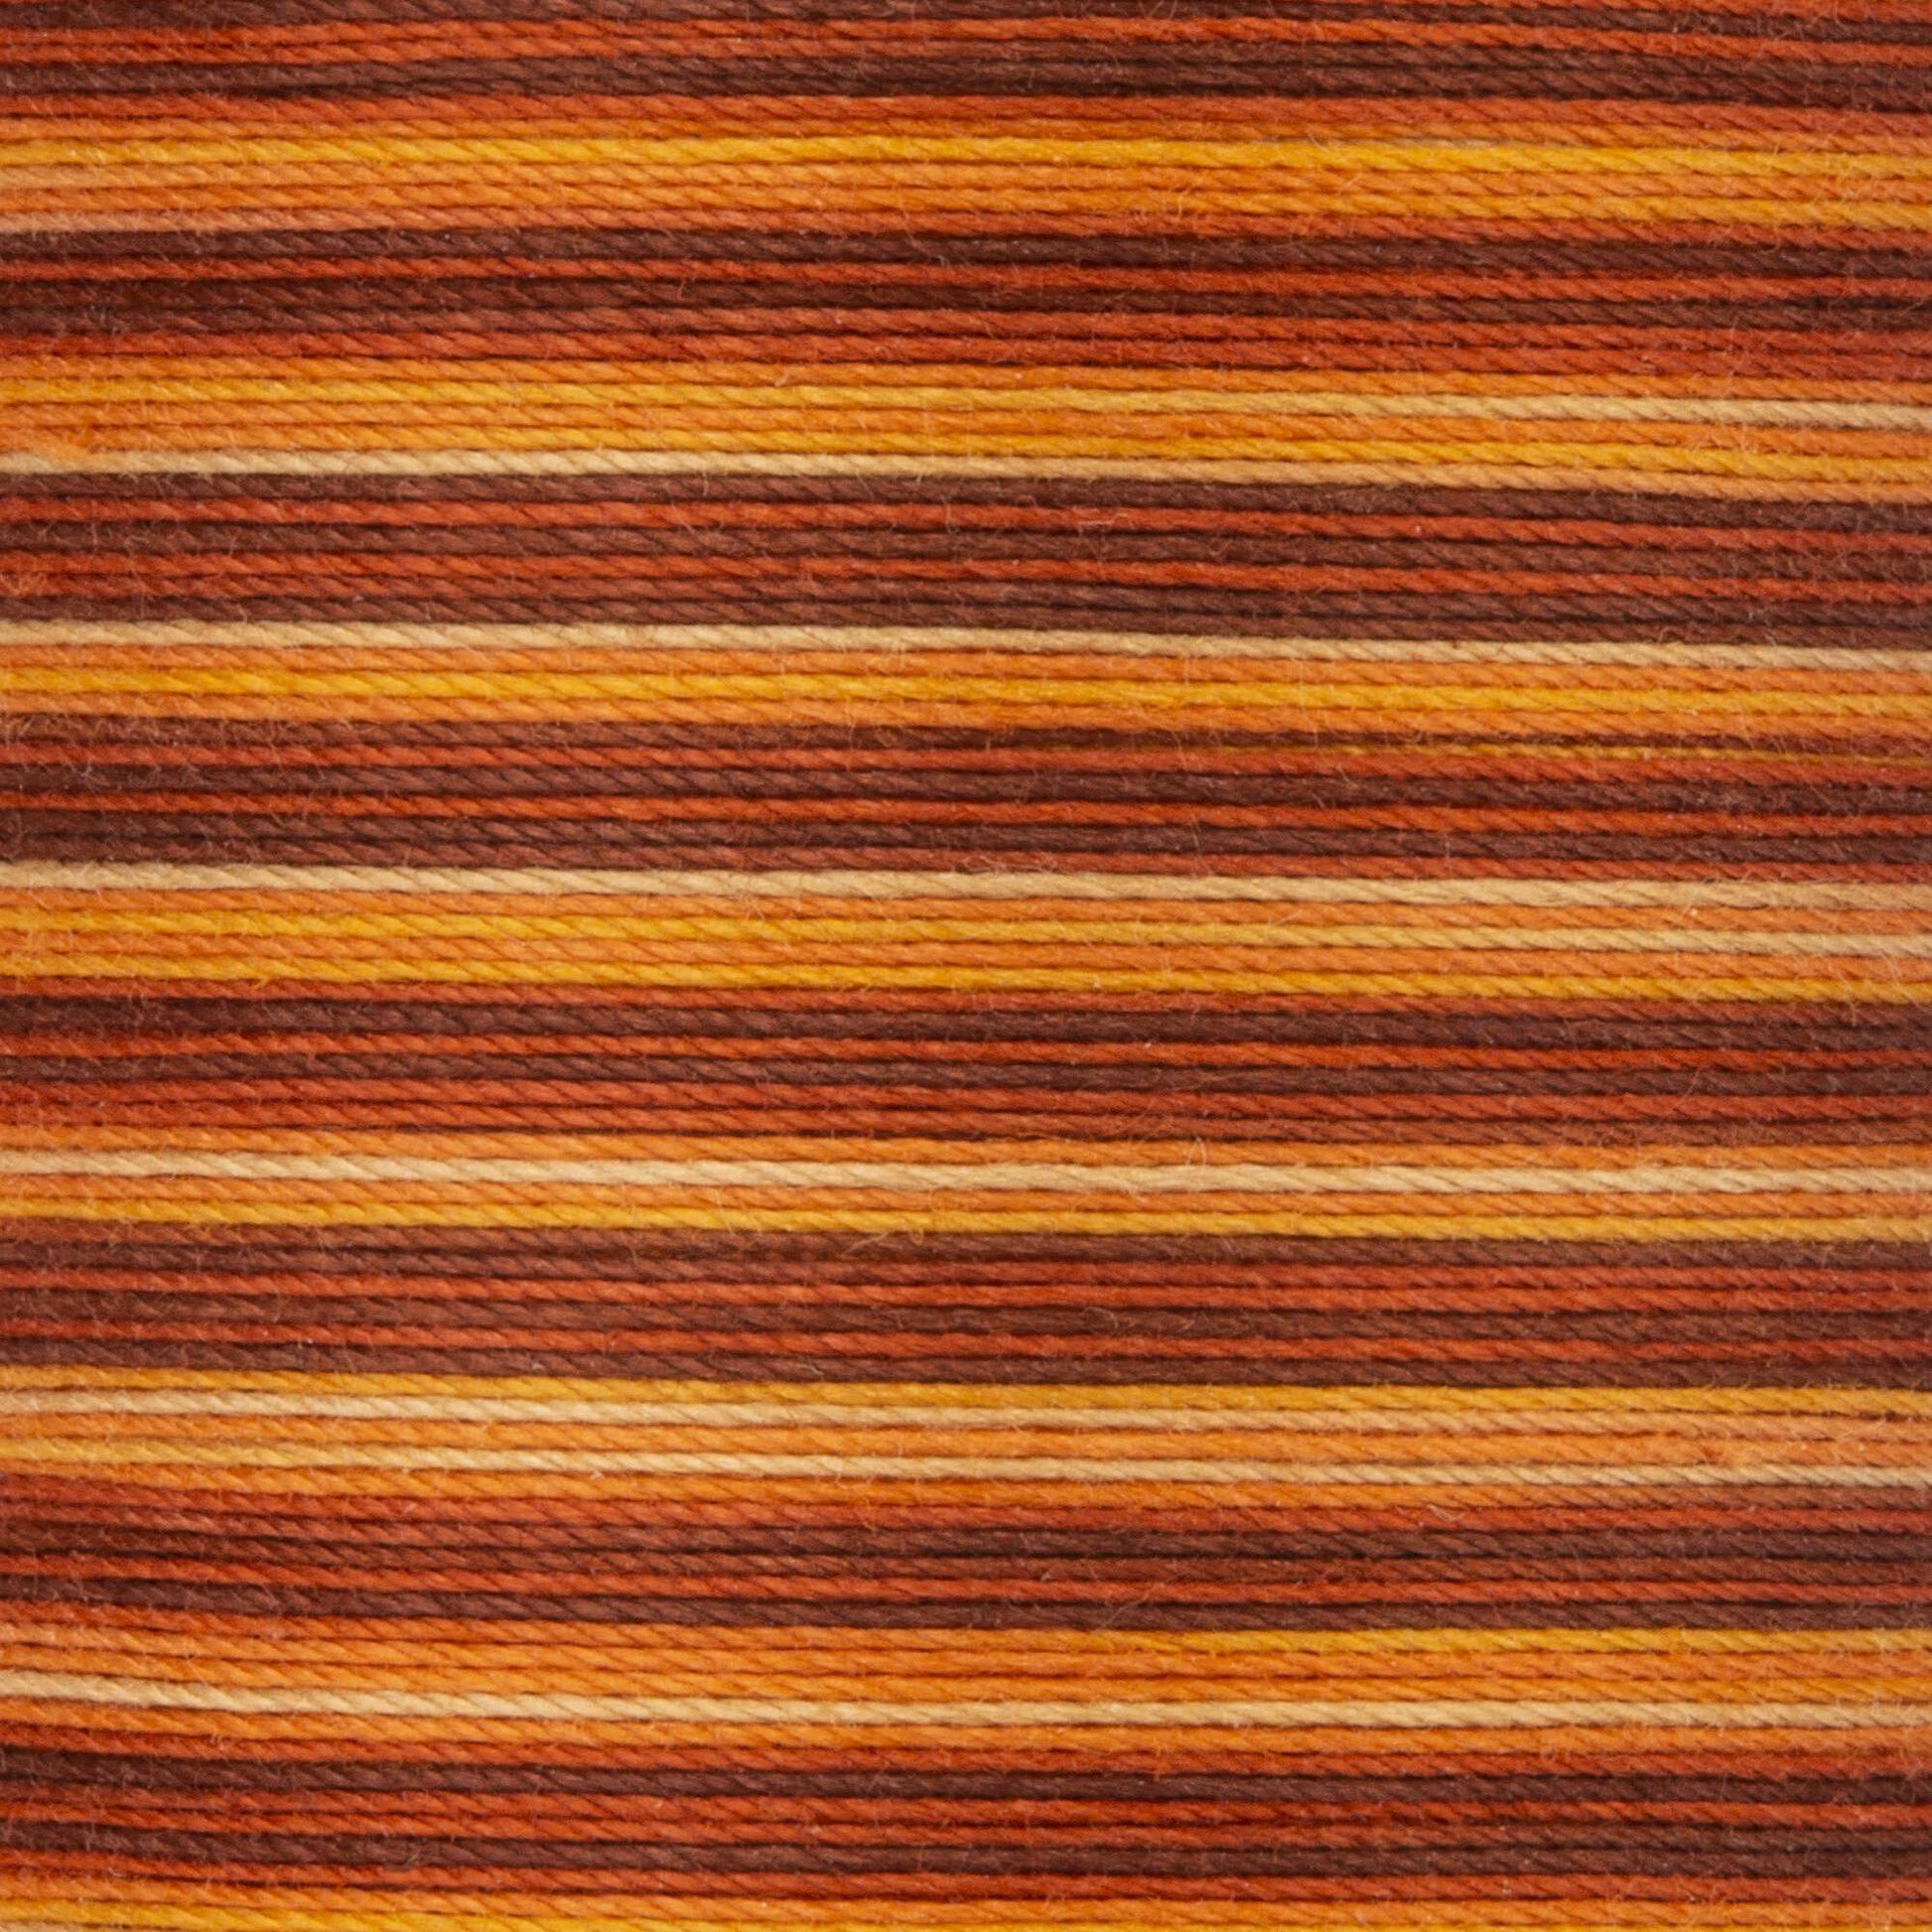 Coats & Clark Cotton Machine Quilting Multicolor Thread (225 Yards) Autumn